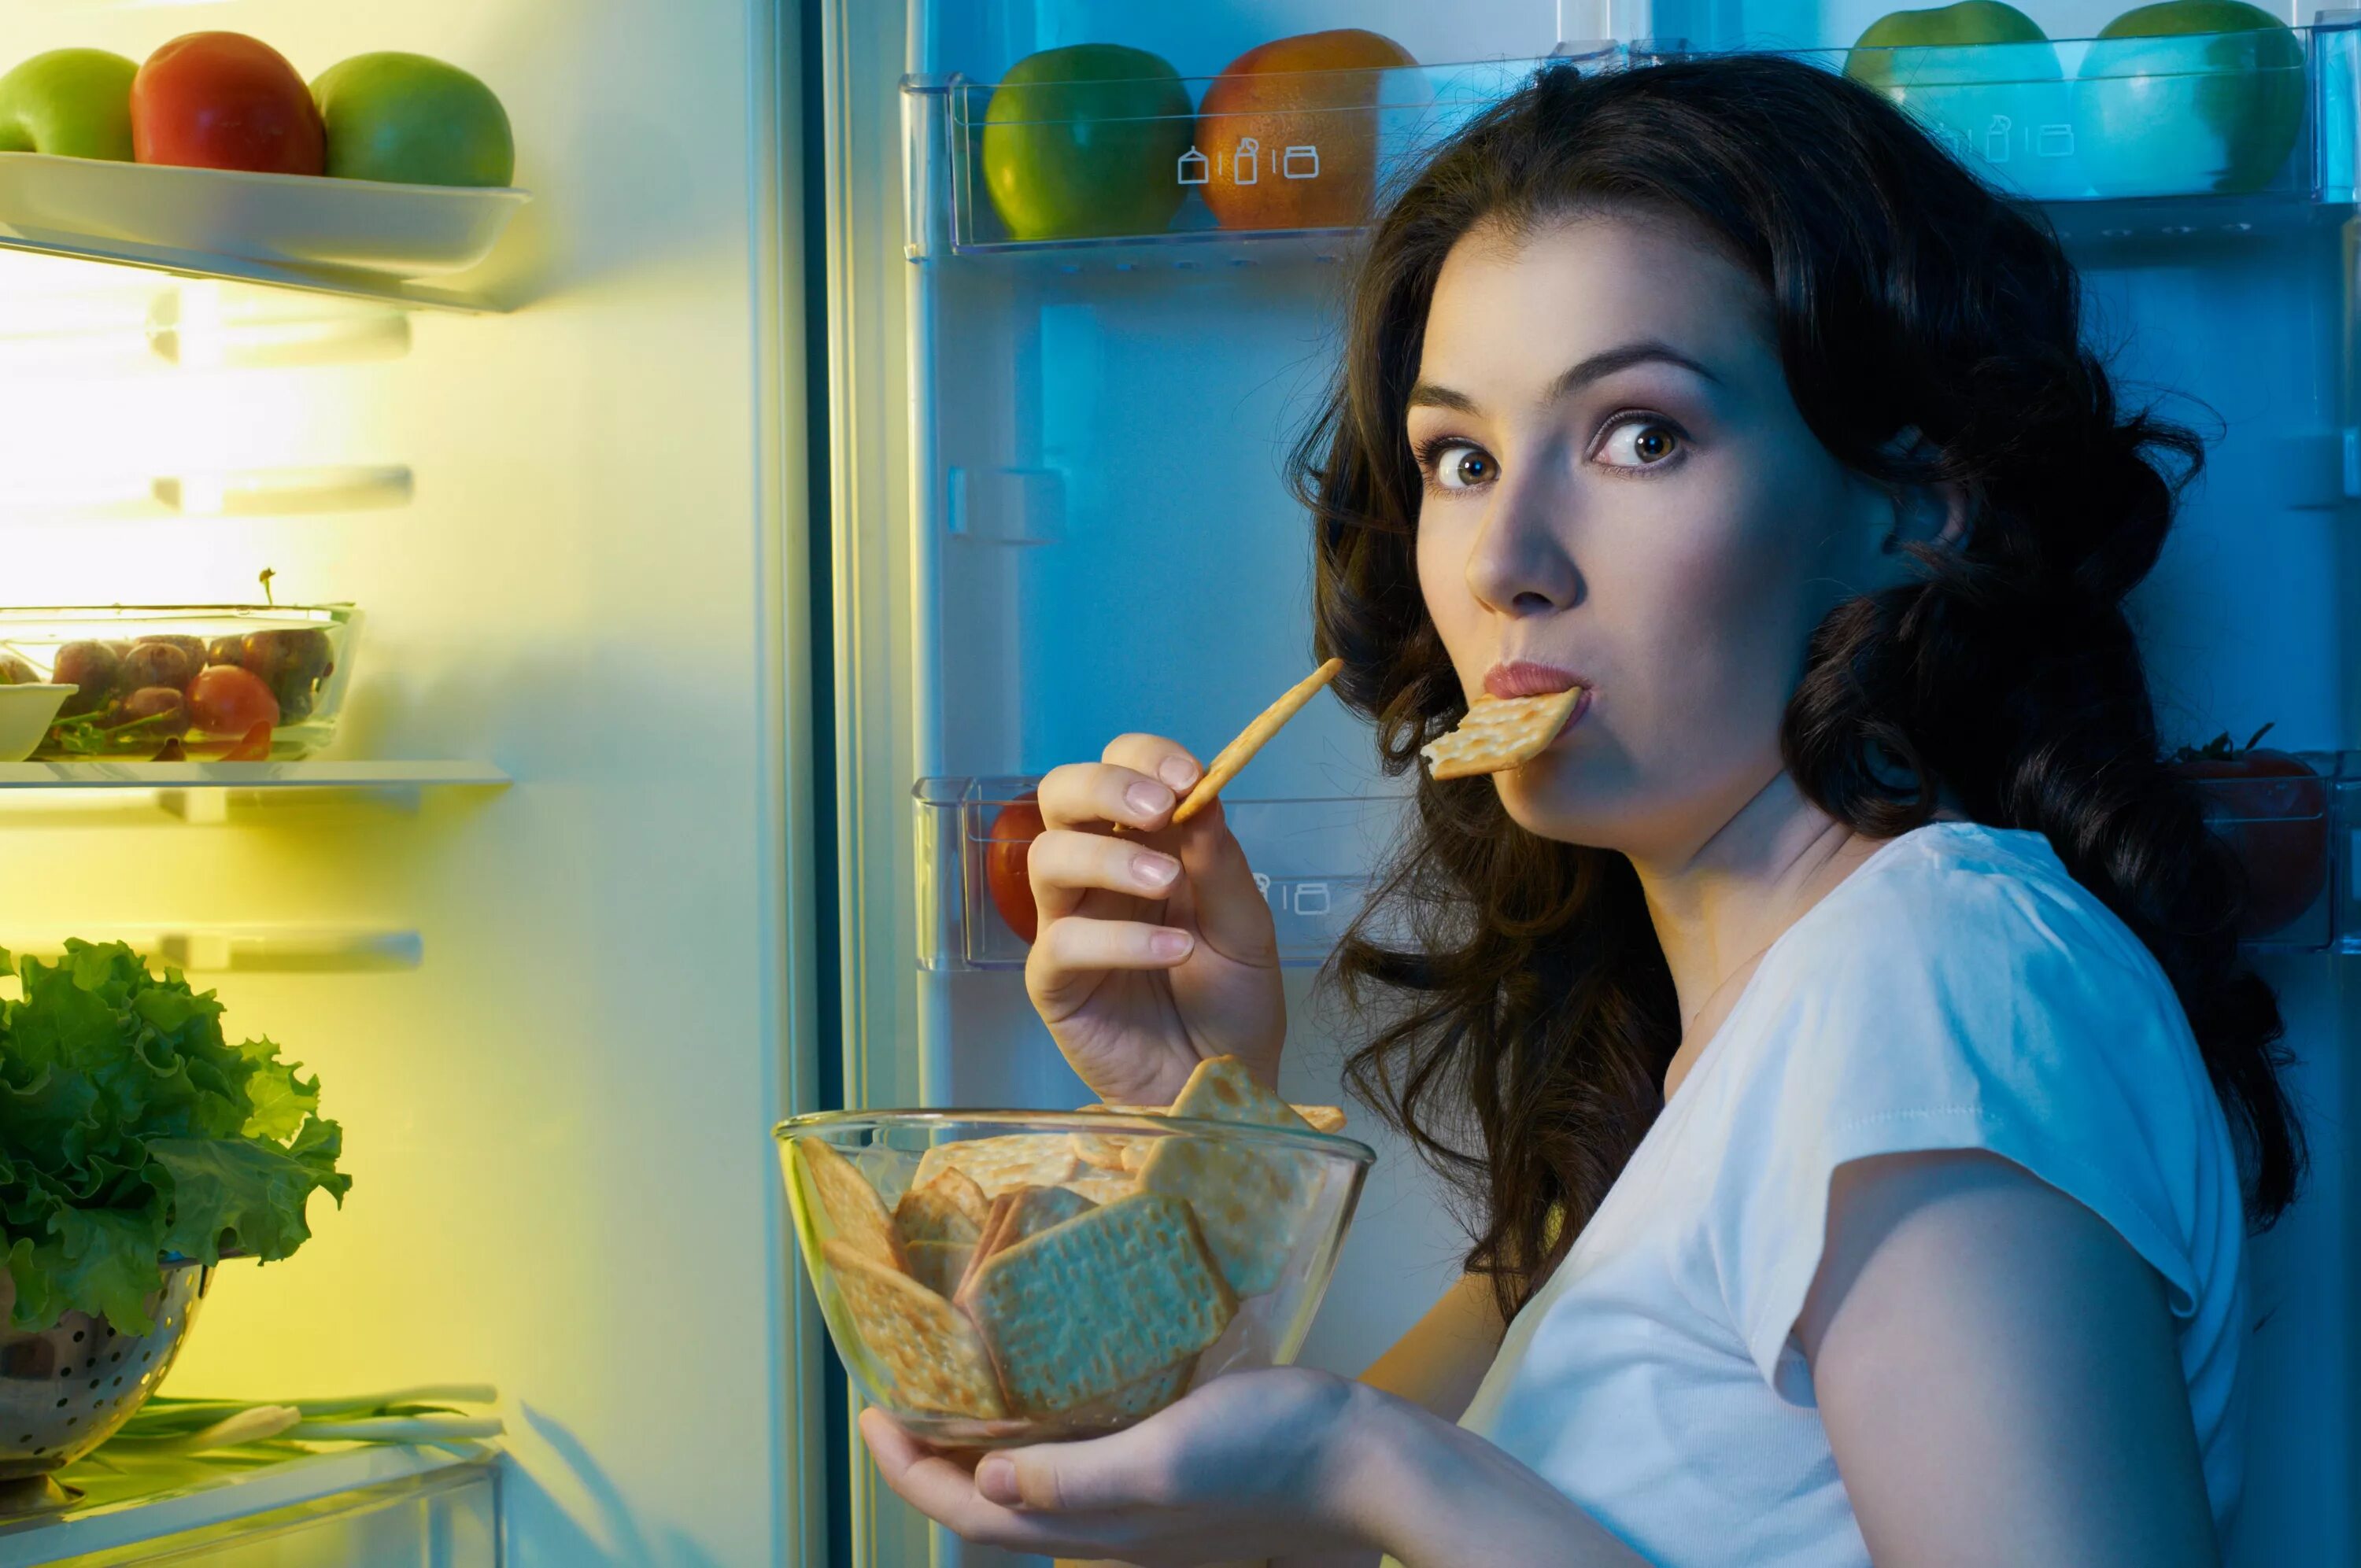 Человек с едой. Девушка возле холодильника. Девушка с едой. Еда на женщине.